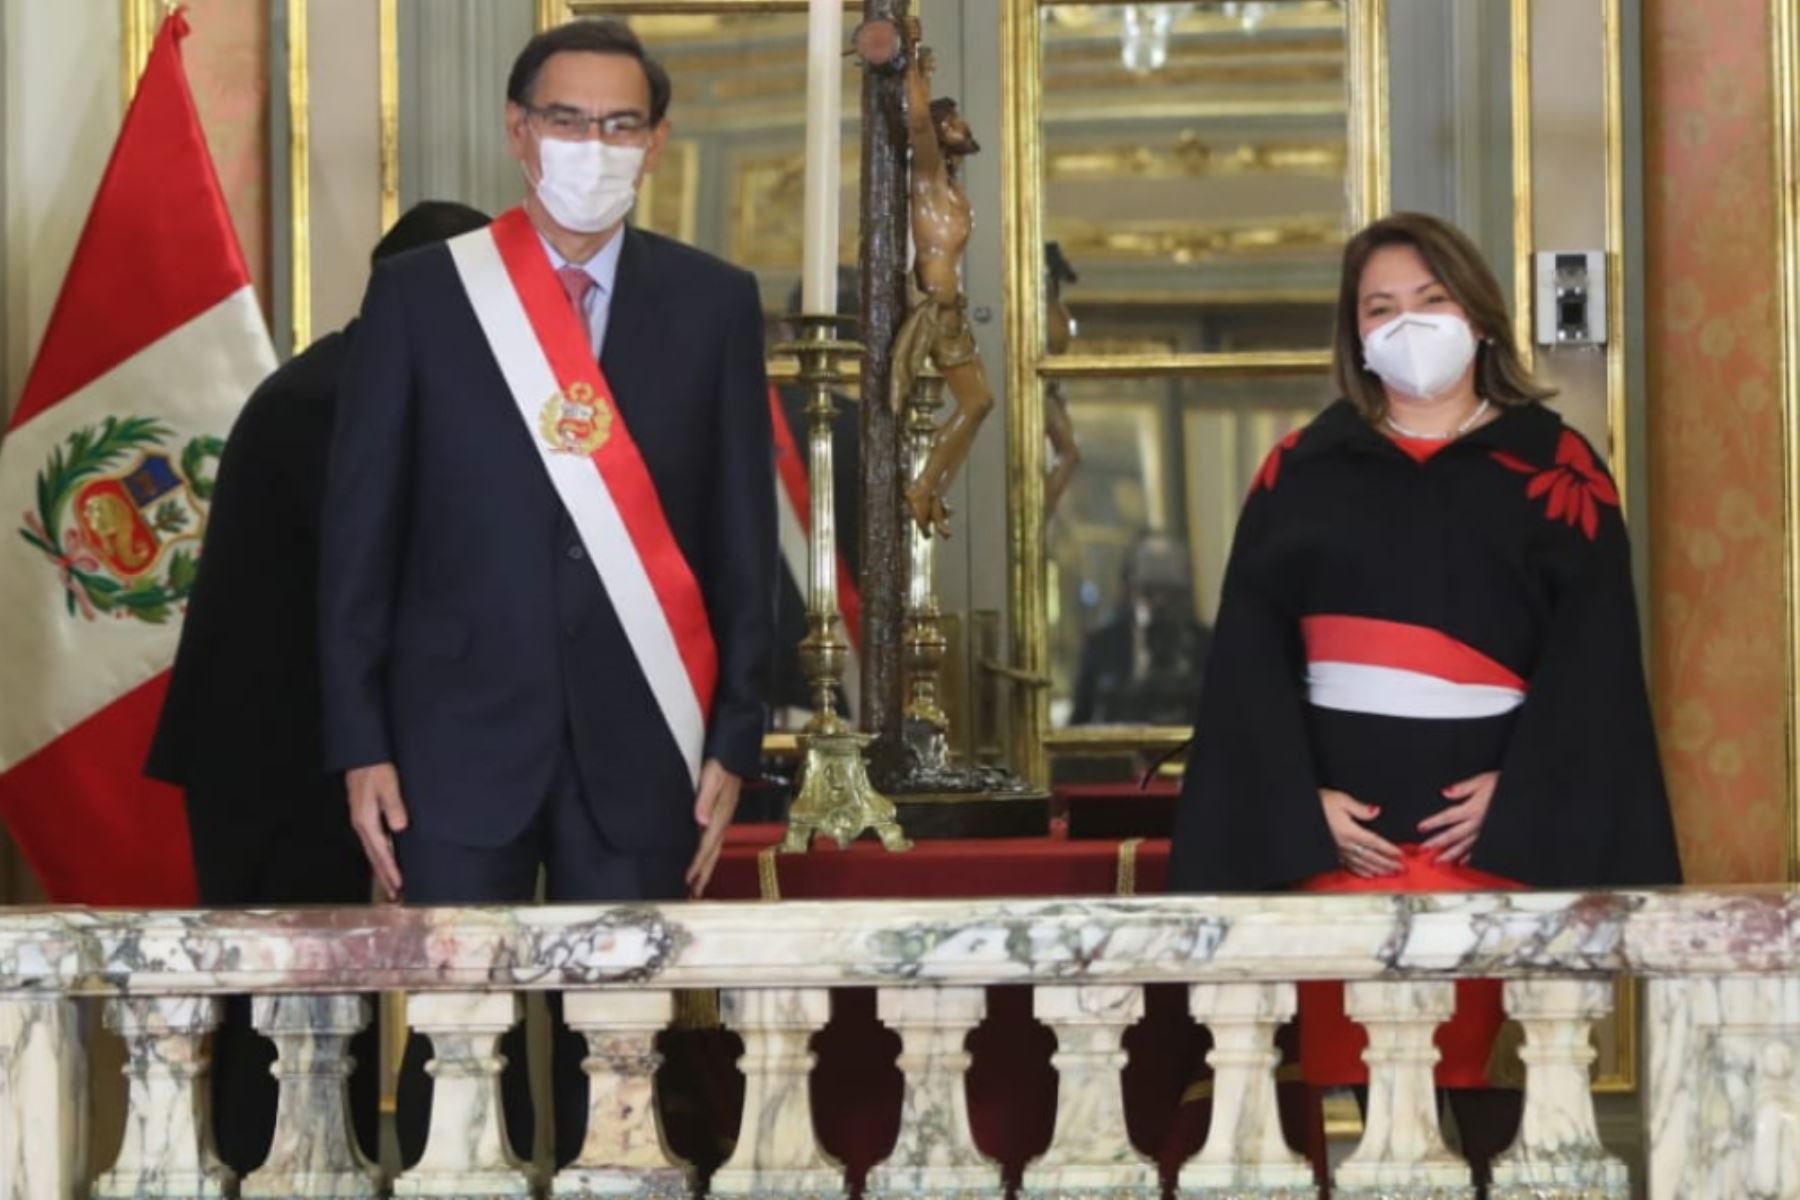 El presidente de la República, Martín Vizcarra, toma juramento a Rocío Barrios como ministra de Comercio Exterior y Turismo.

Foto: ANDINA/ Prensa Presidencia